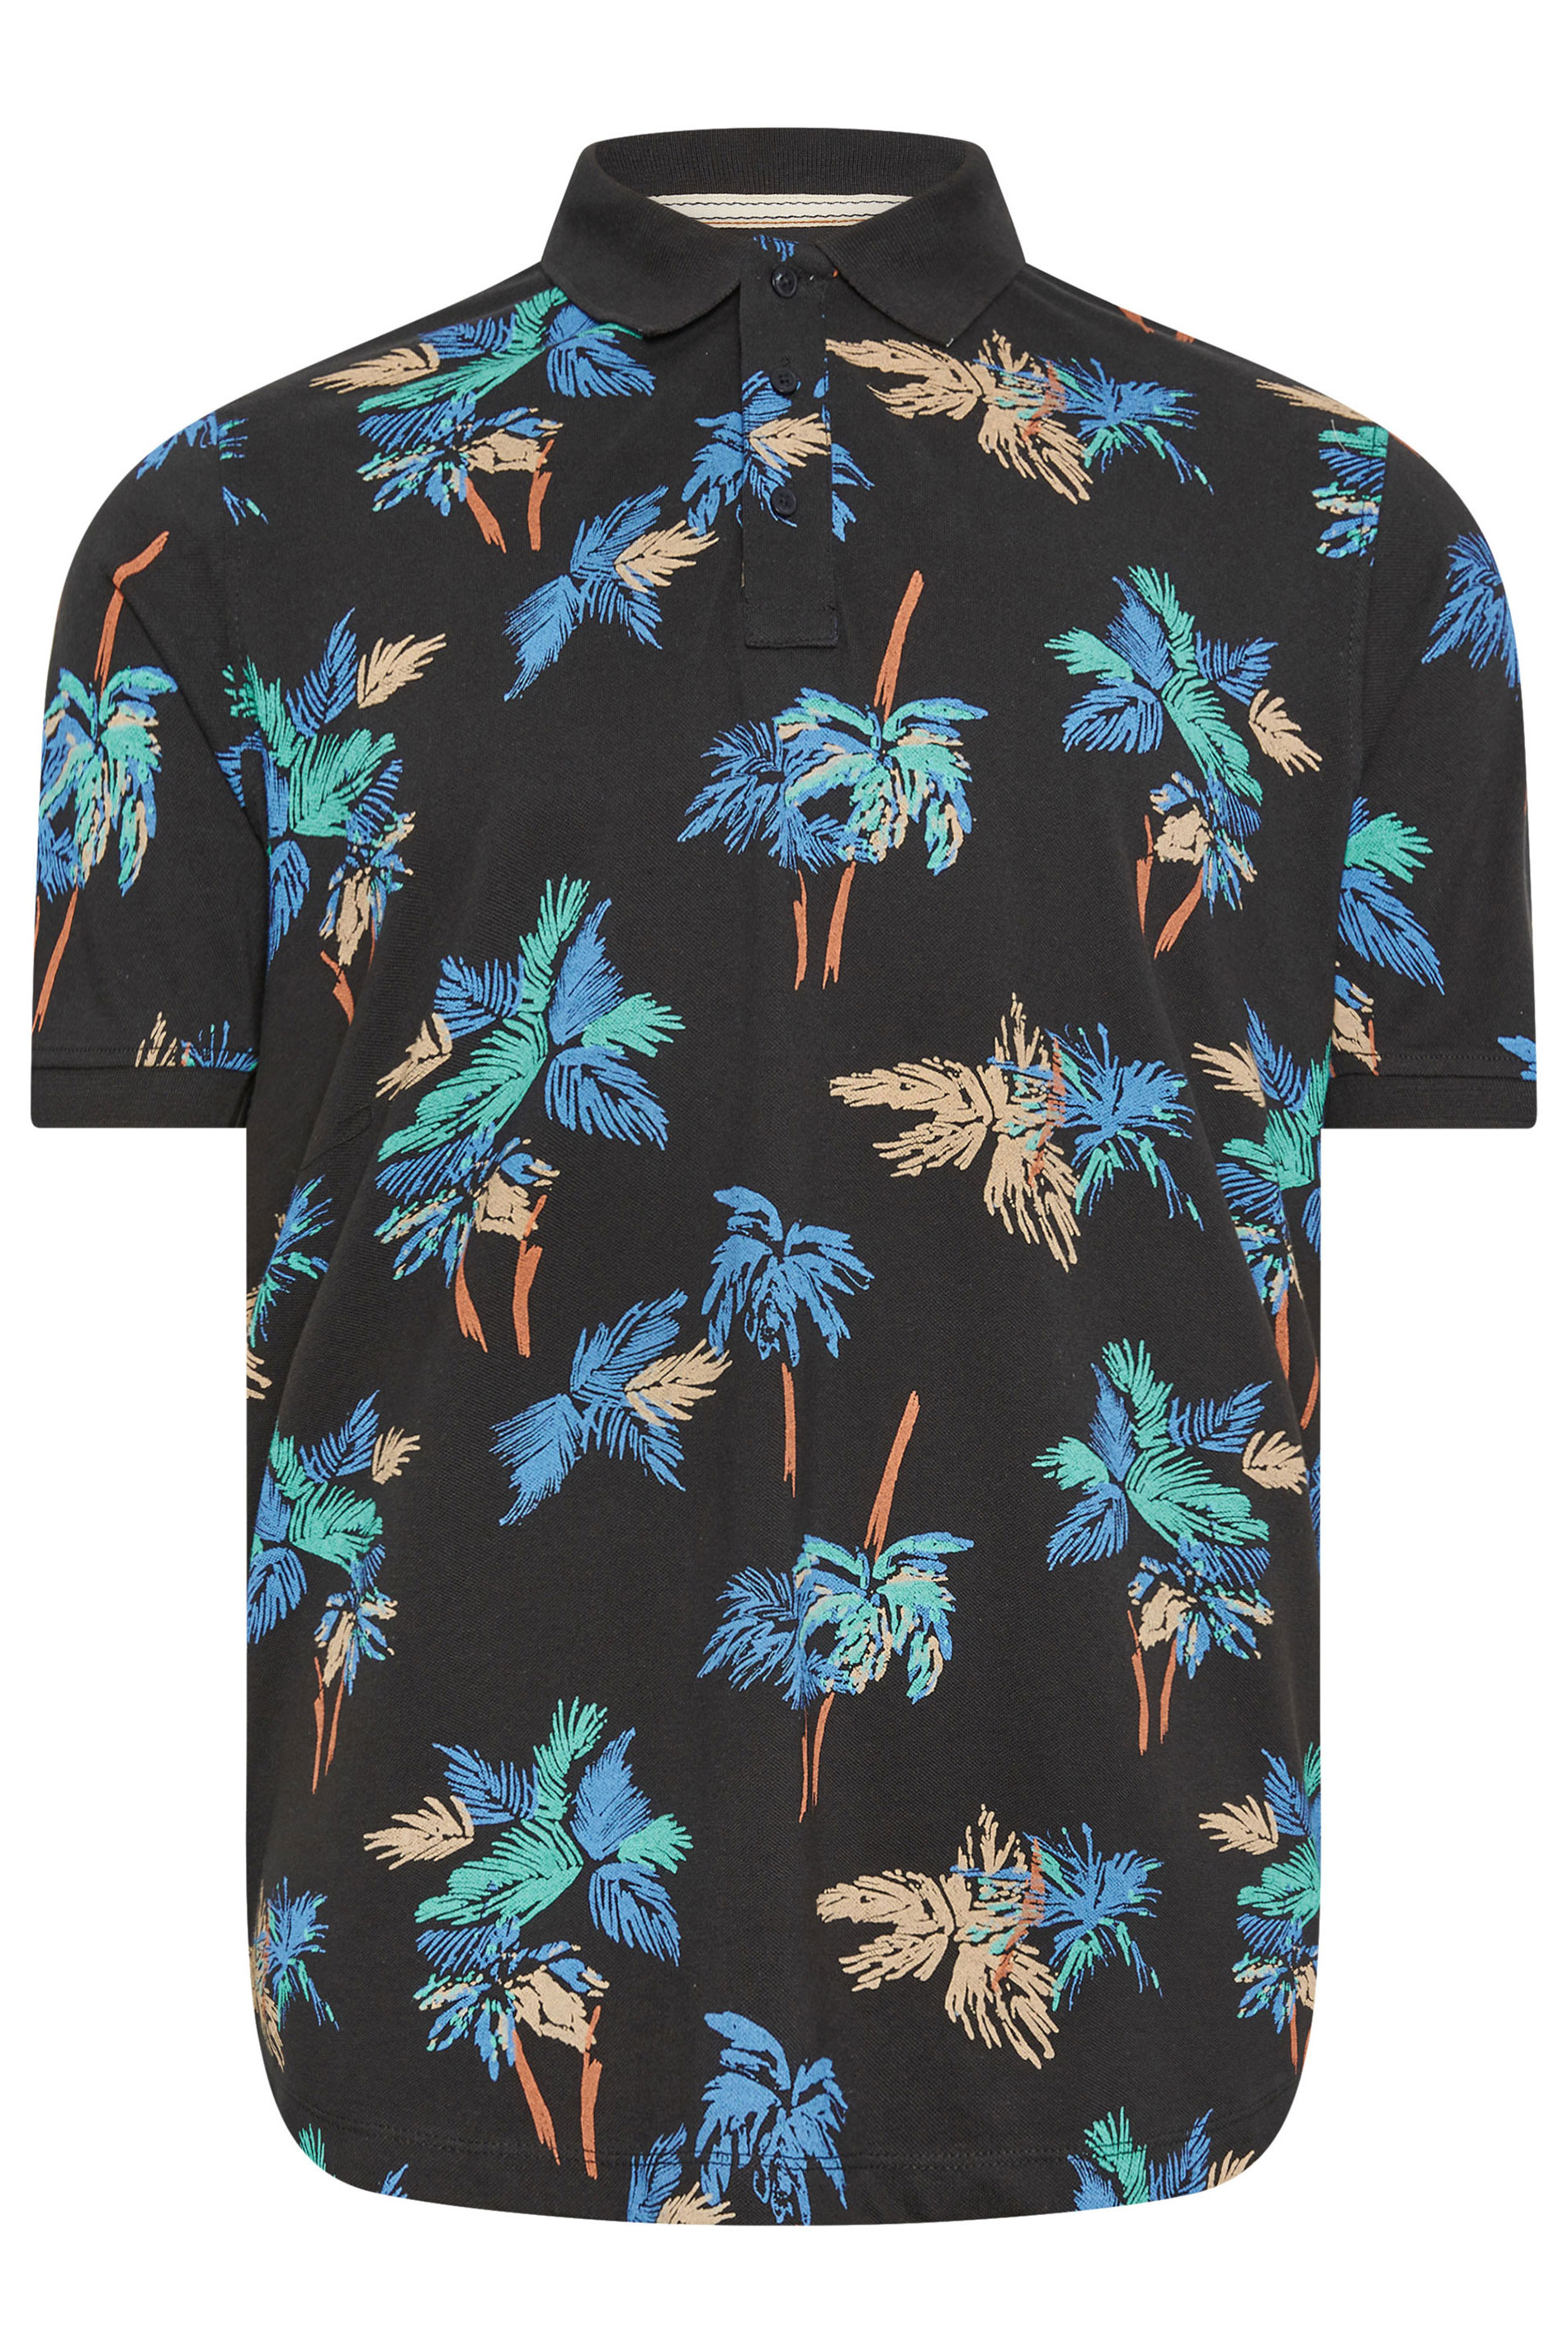 BLEND Big & Tall Black Palm Tree Print Polo Shirt | BadRhino 3